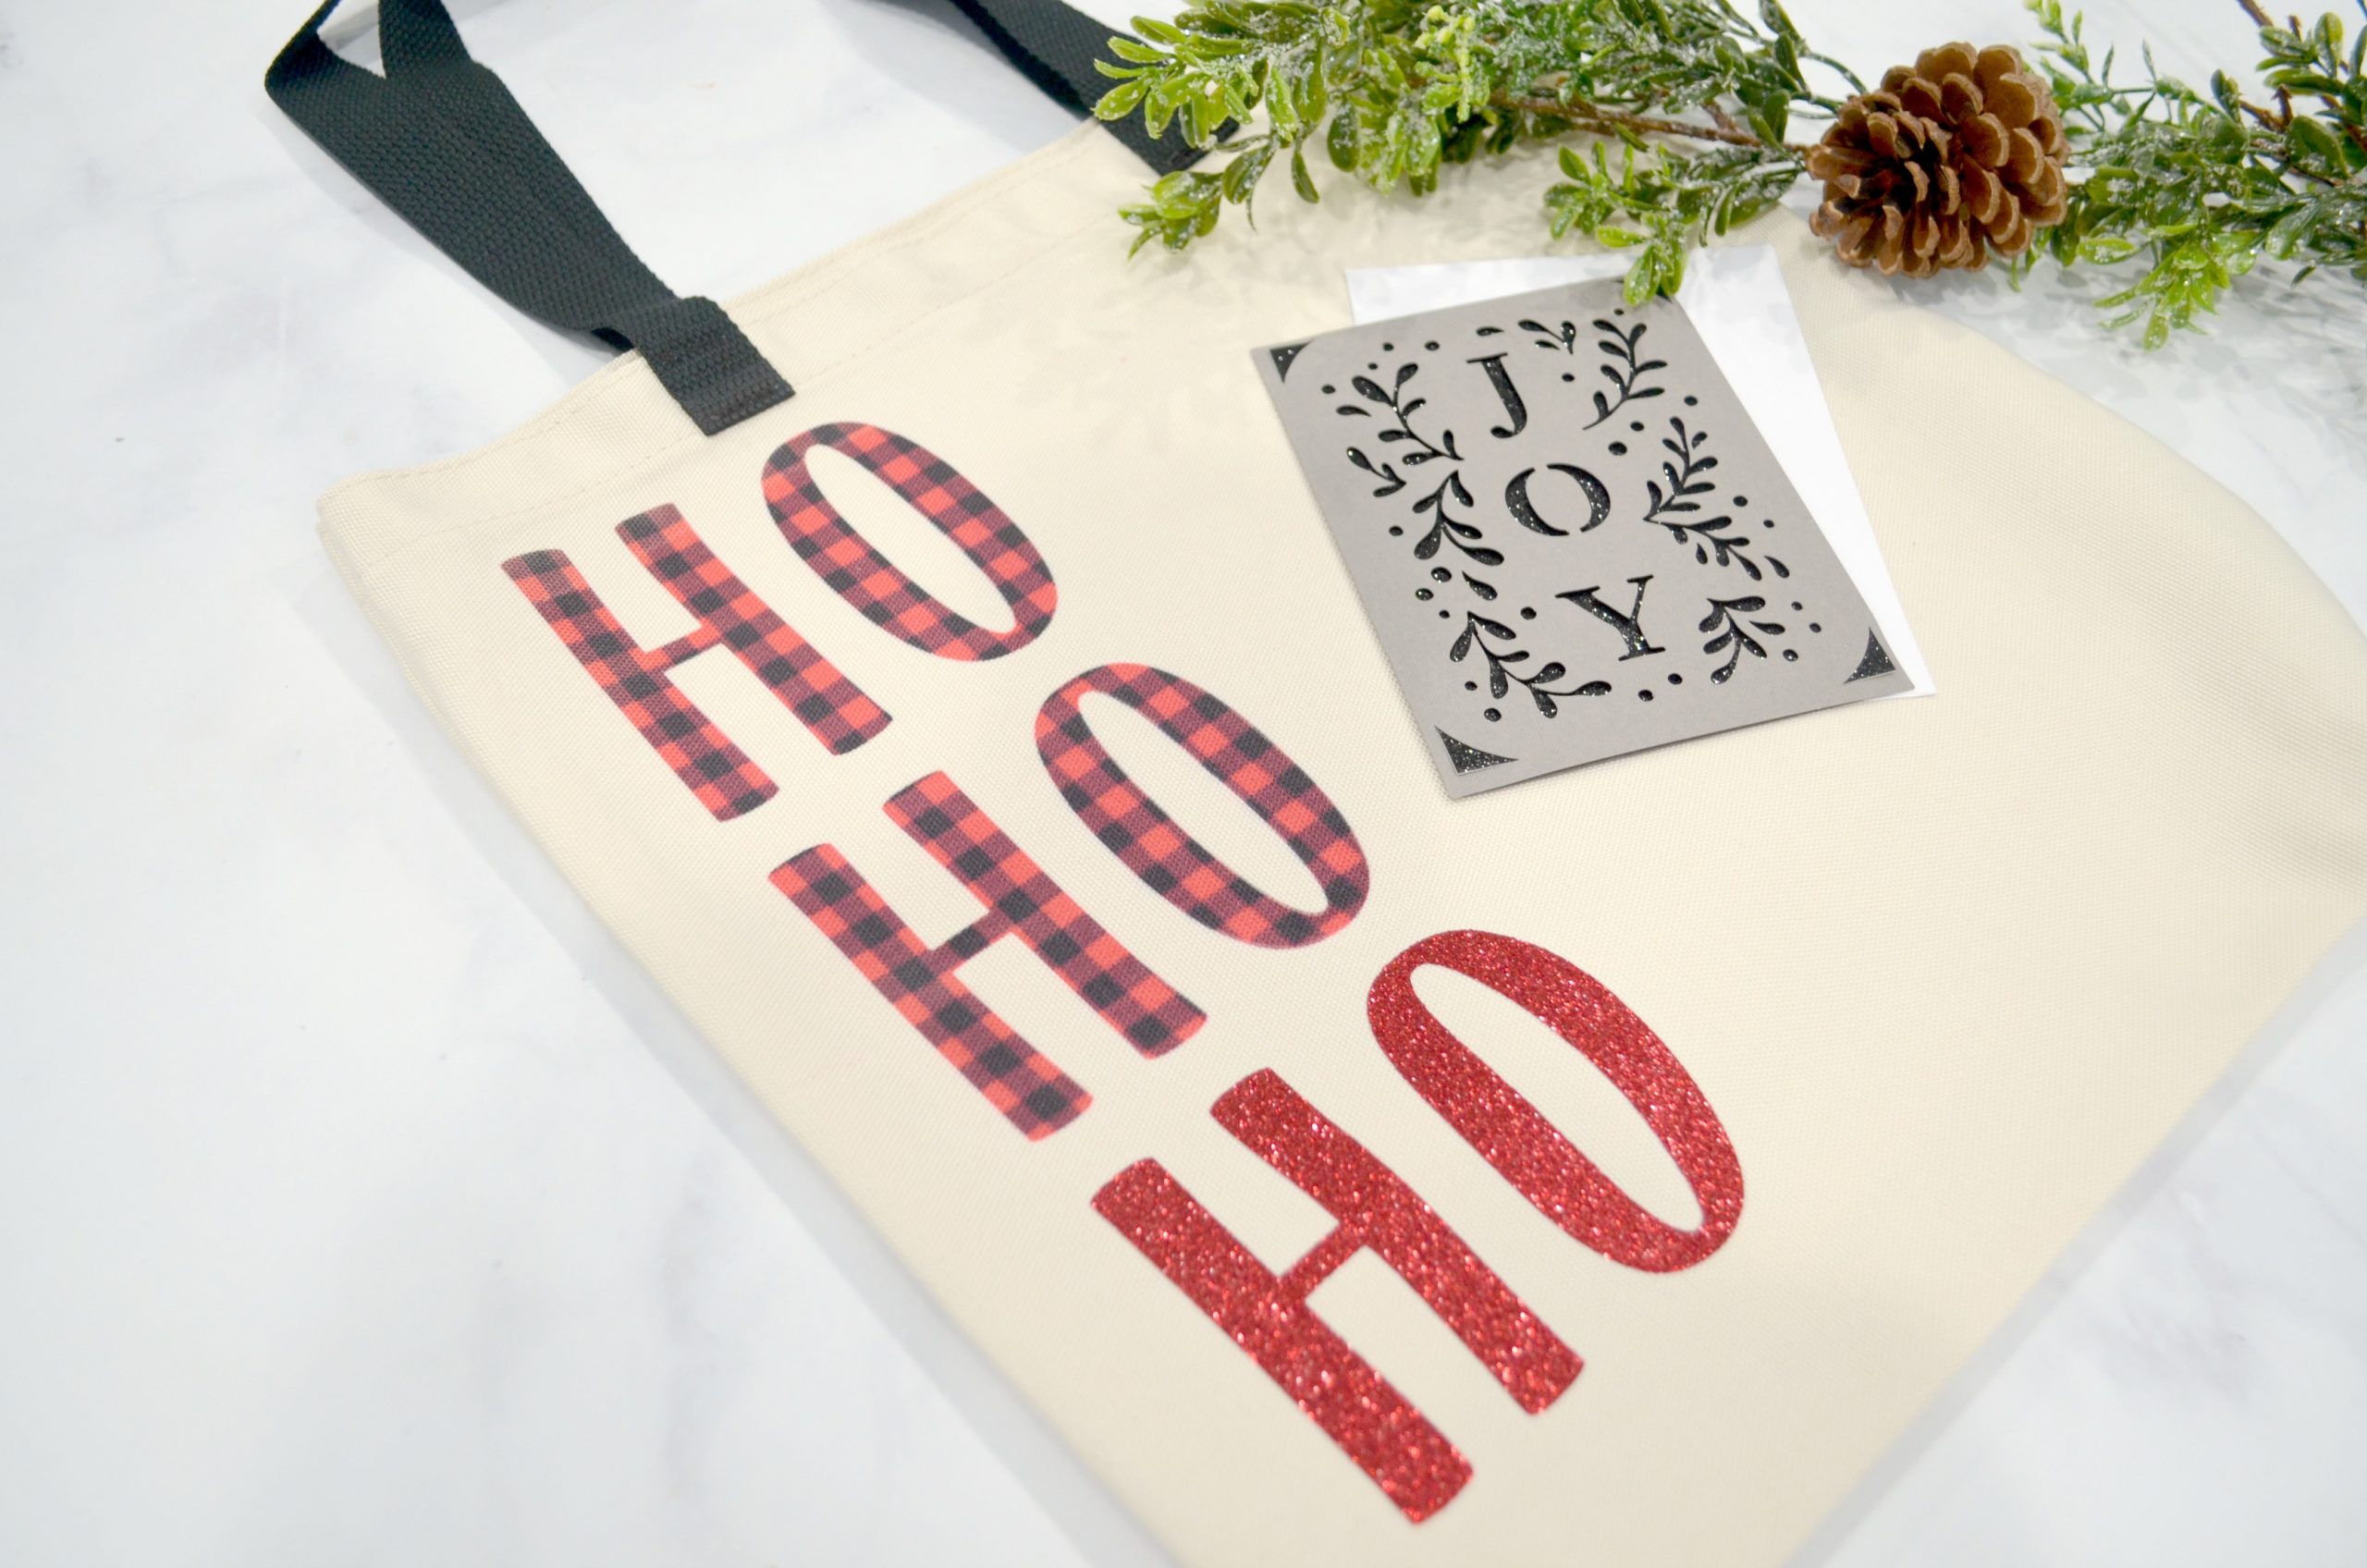 JOY Christmas Card with Cricut Insert Cards - Amy Latta Creations